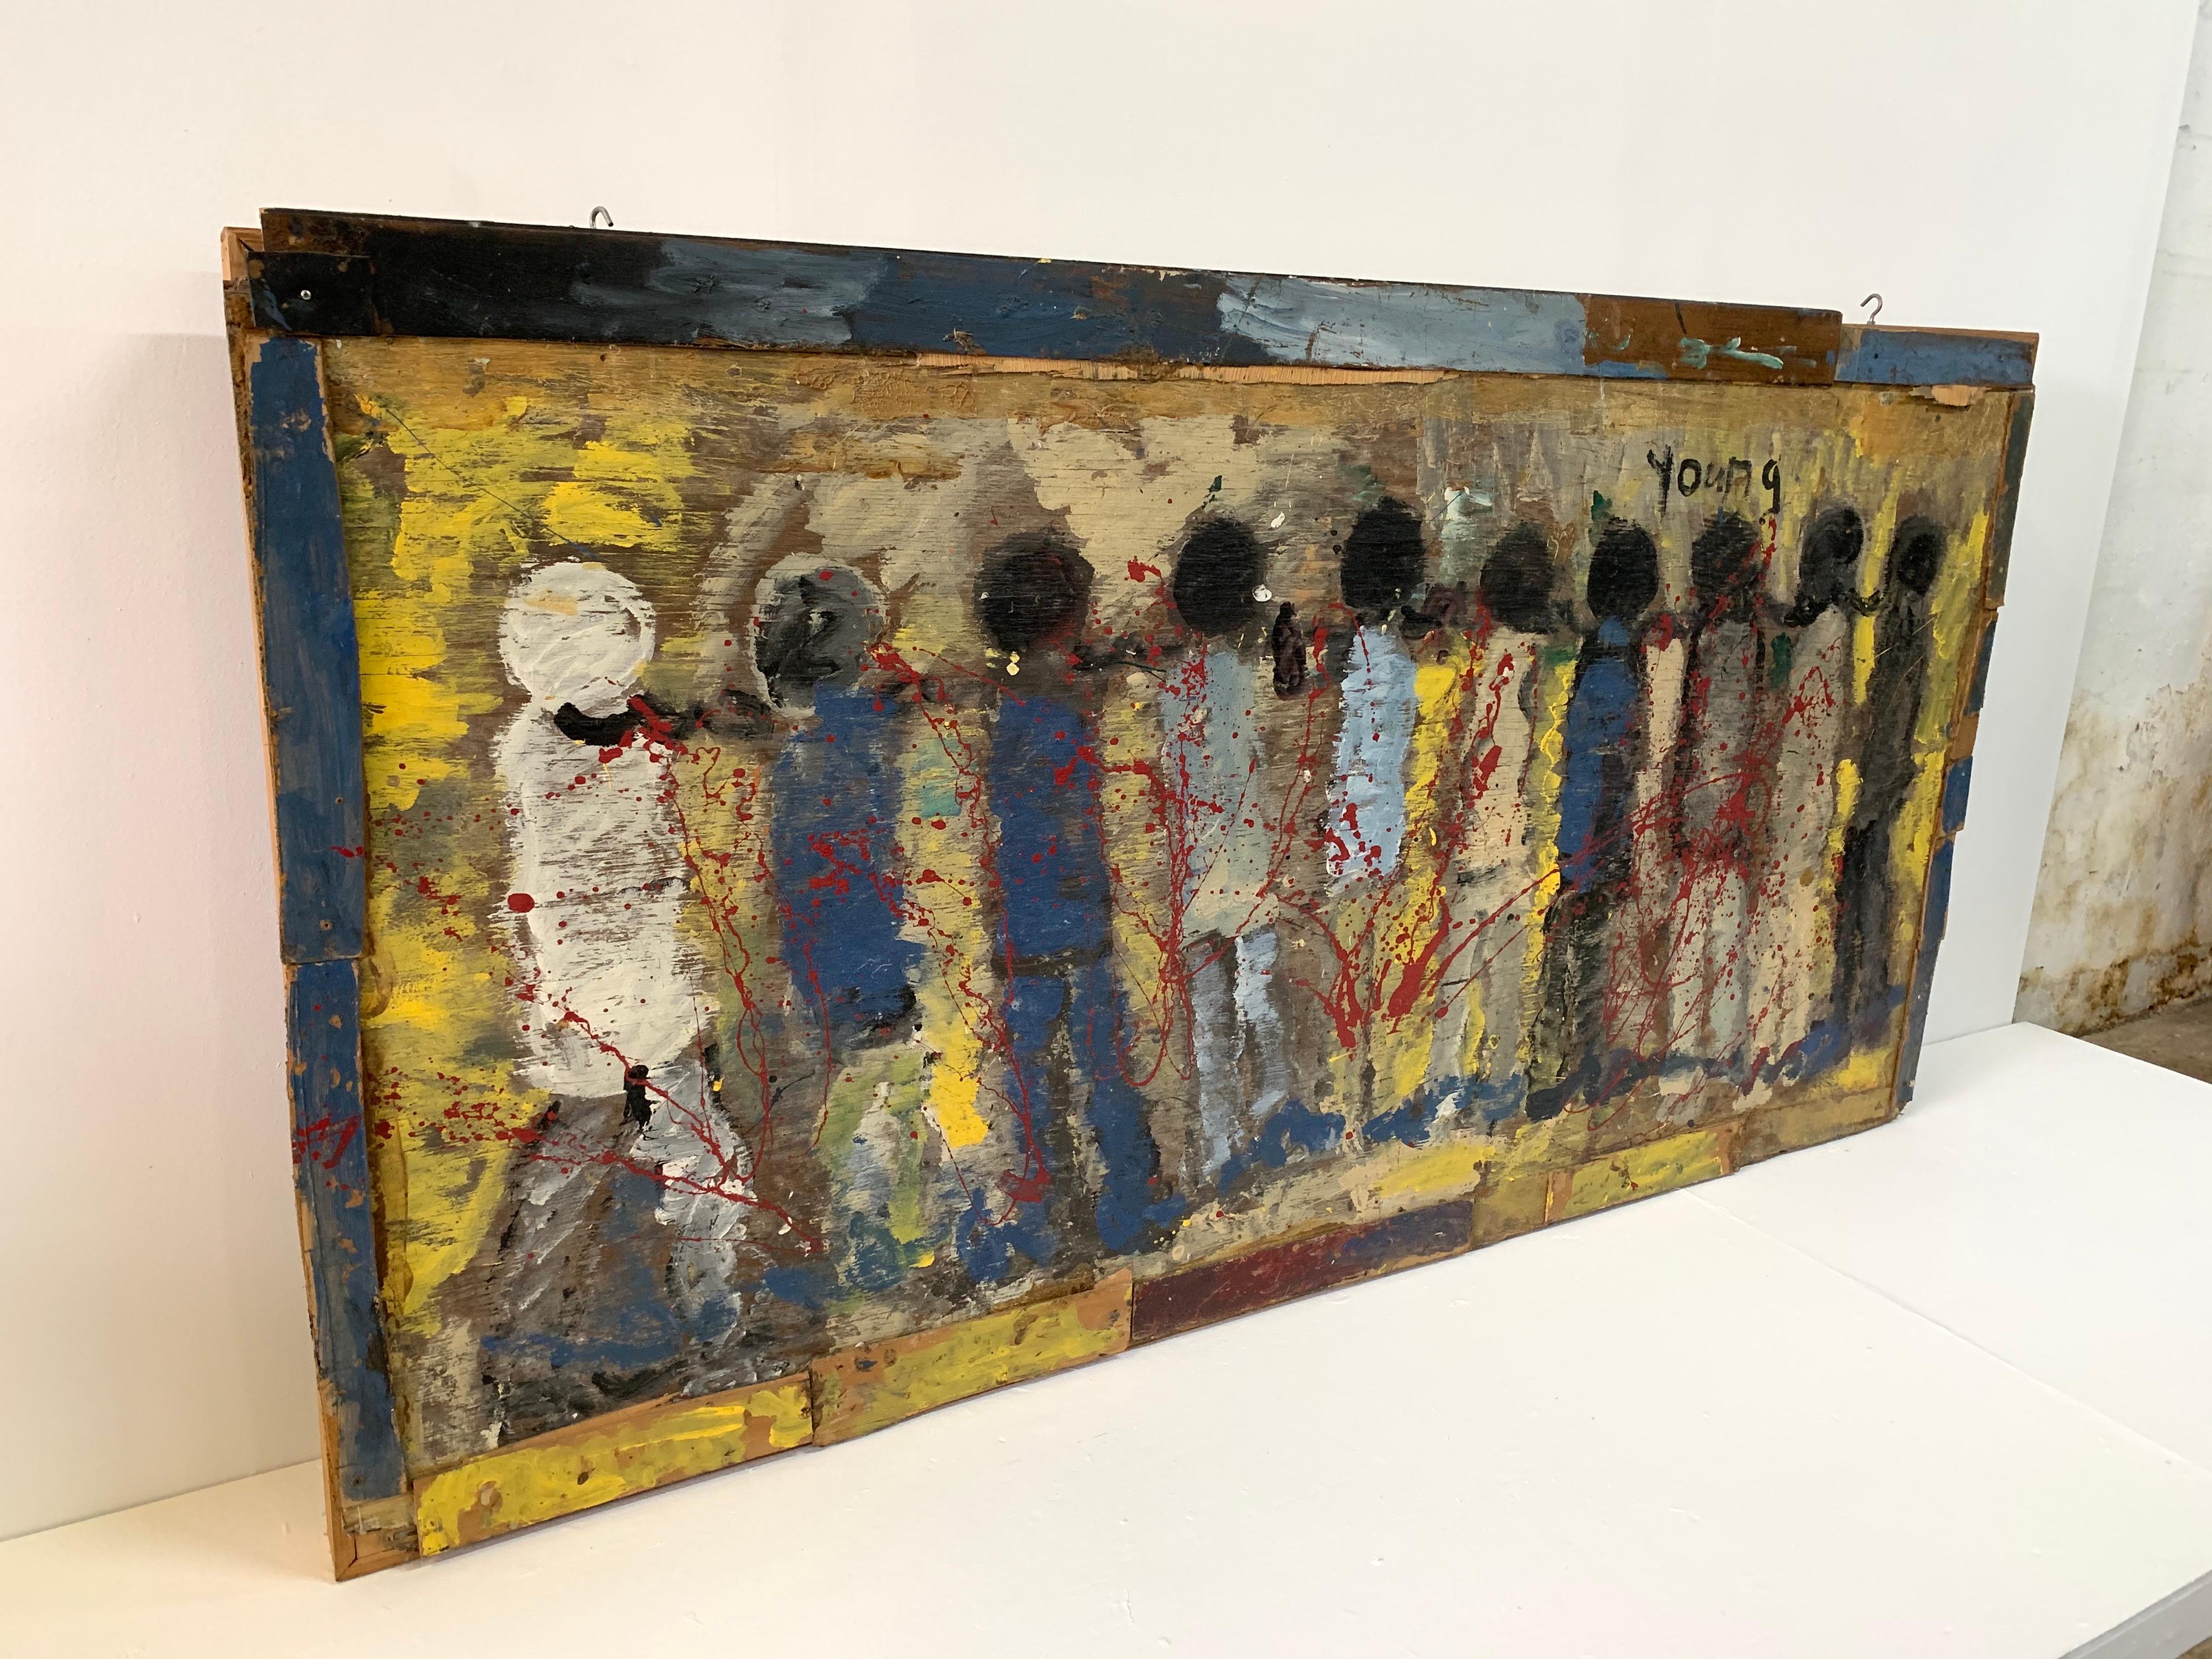 Œuvre abstraite en techniques mixtes de l'artiste Purvis Young. Art populaire représentant une scène très puissante de personnages enchaînés. L'œuvre représentant l'esclavage moderne est peinte en ocre vif, rouge, bleu, blanc et noir. Encadré par